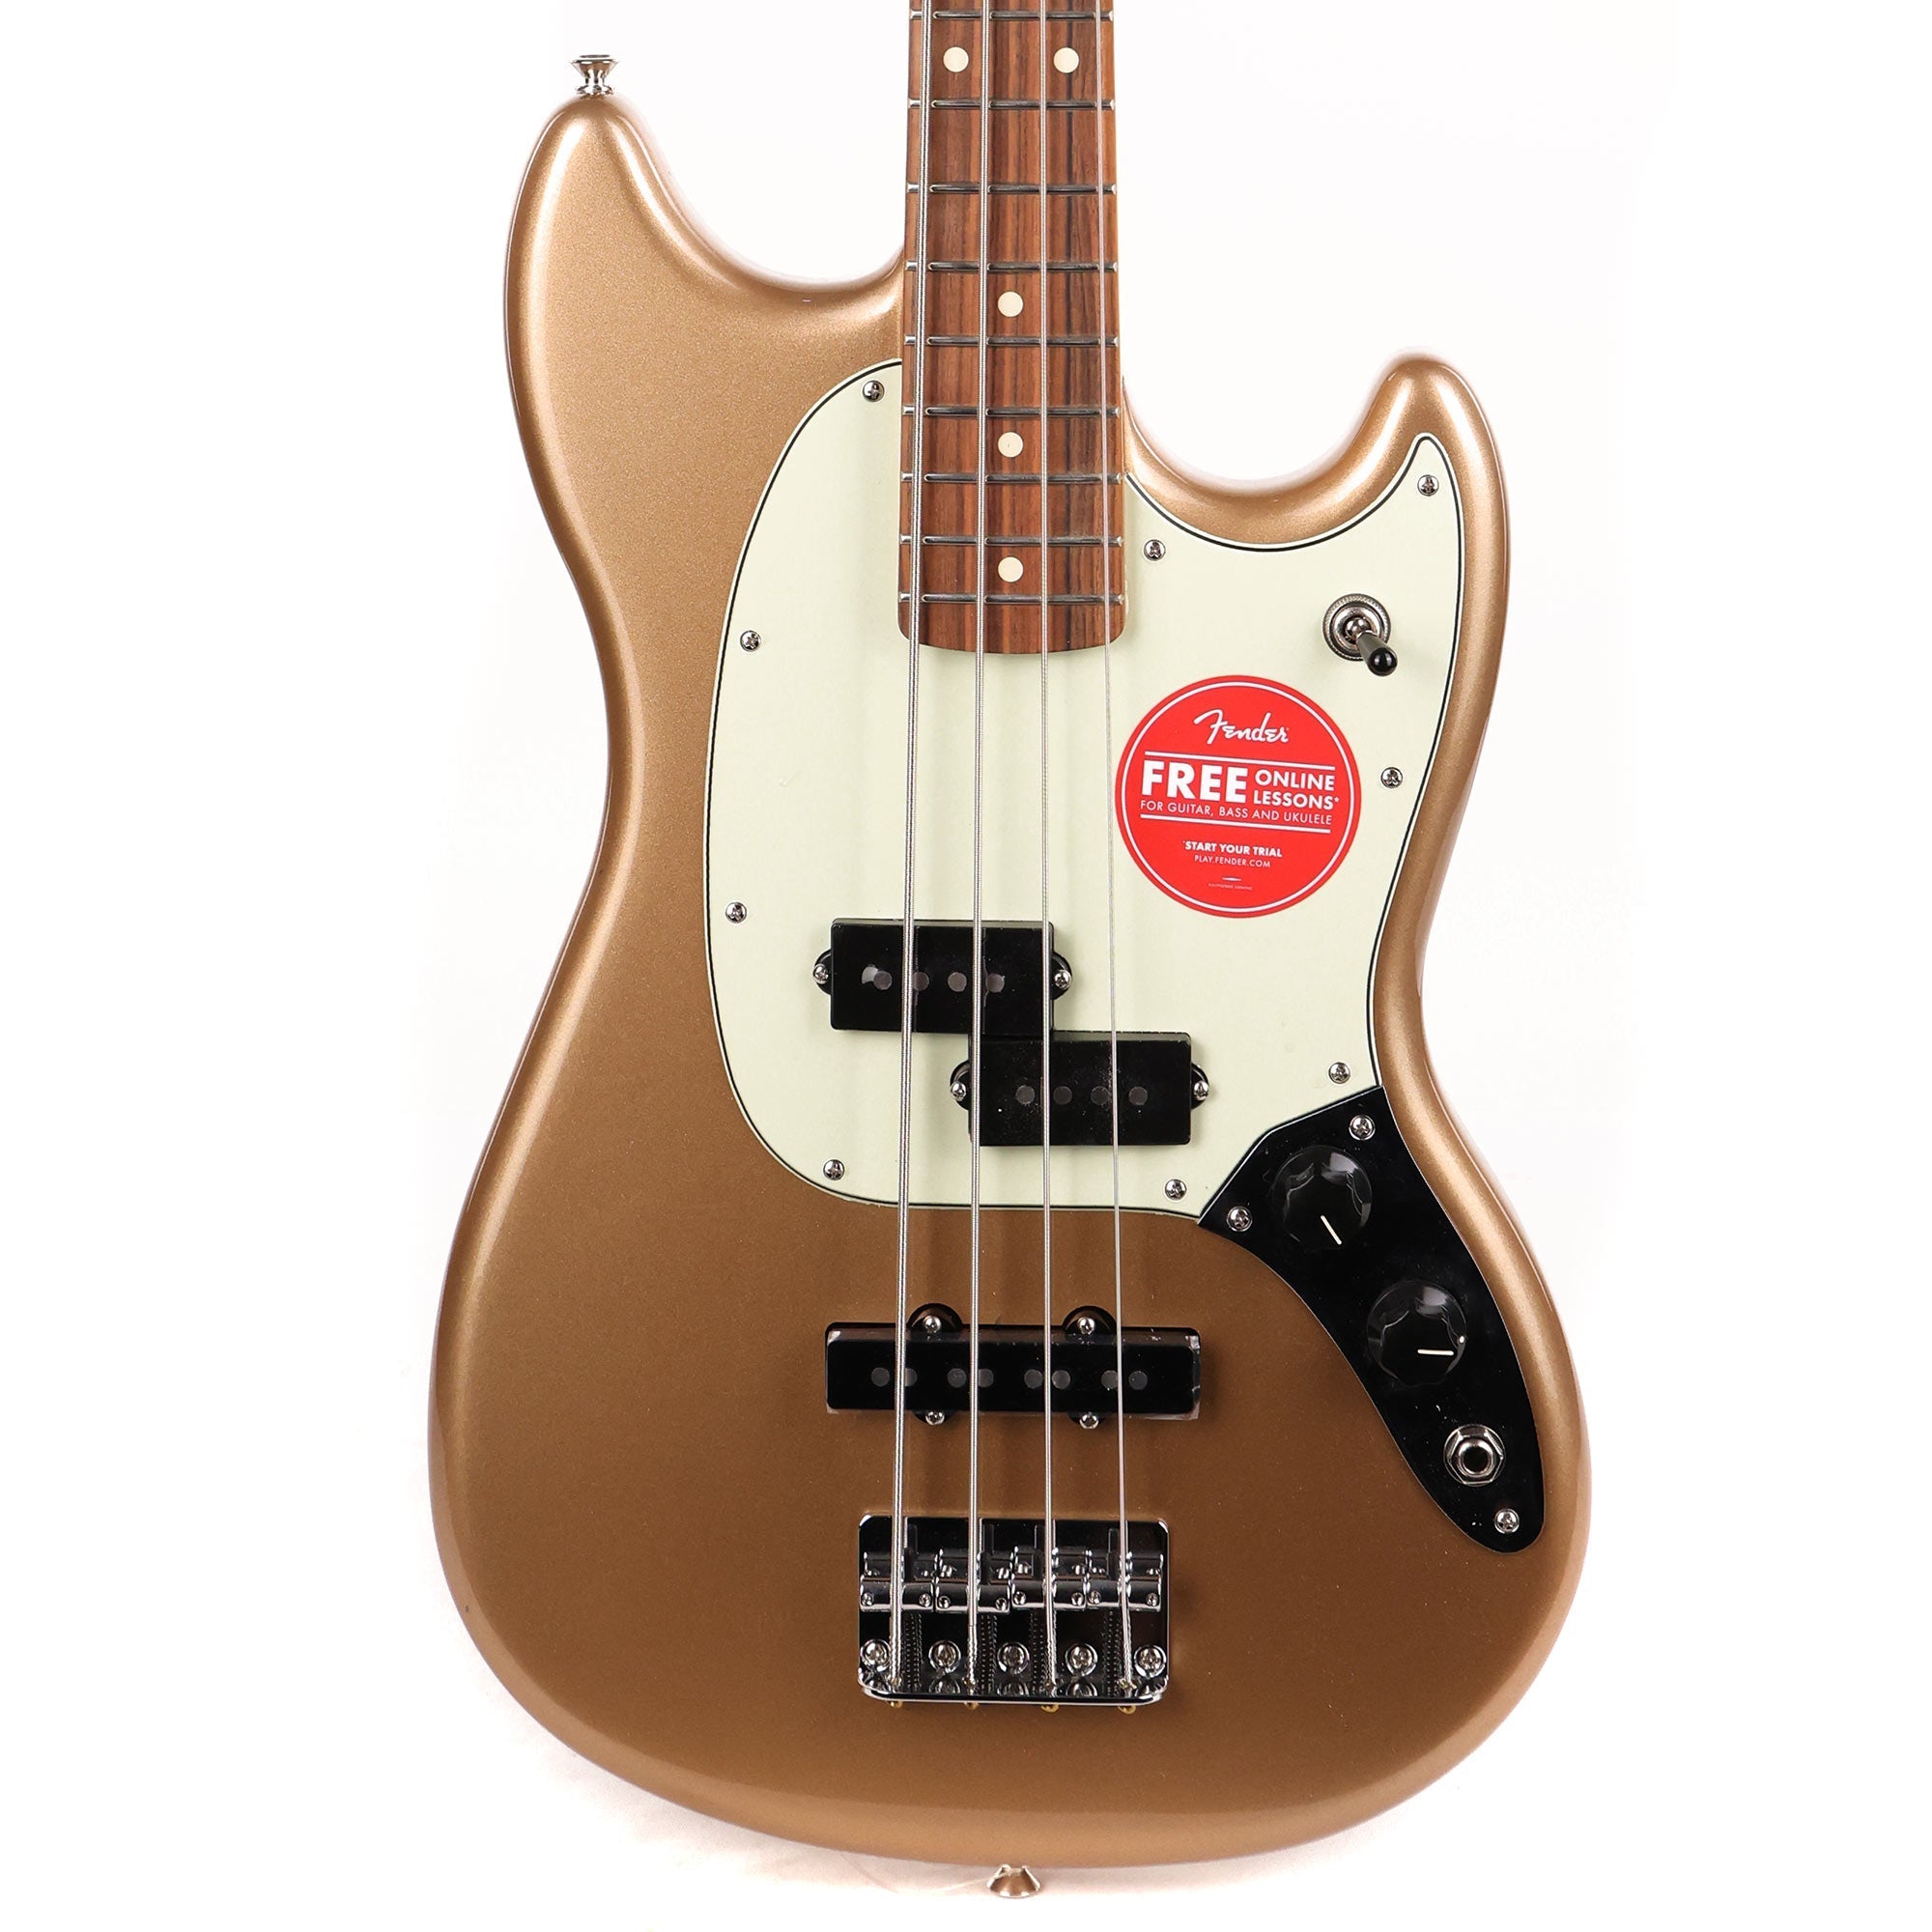 Fender Player Mustang PJ Bass Guitar, Pau Ferro FB, Firemist Gold